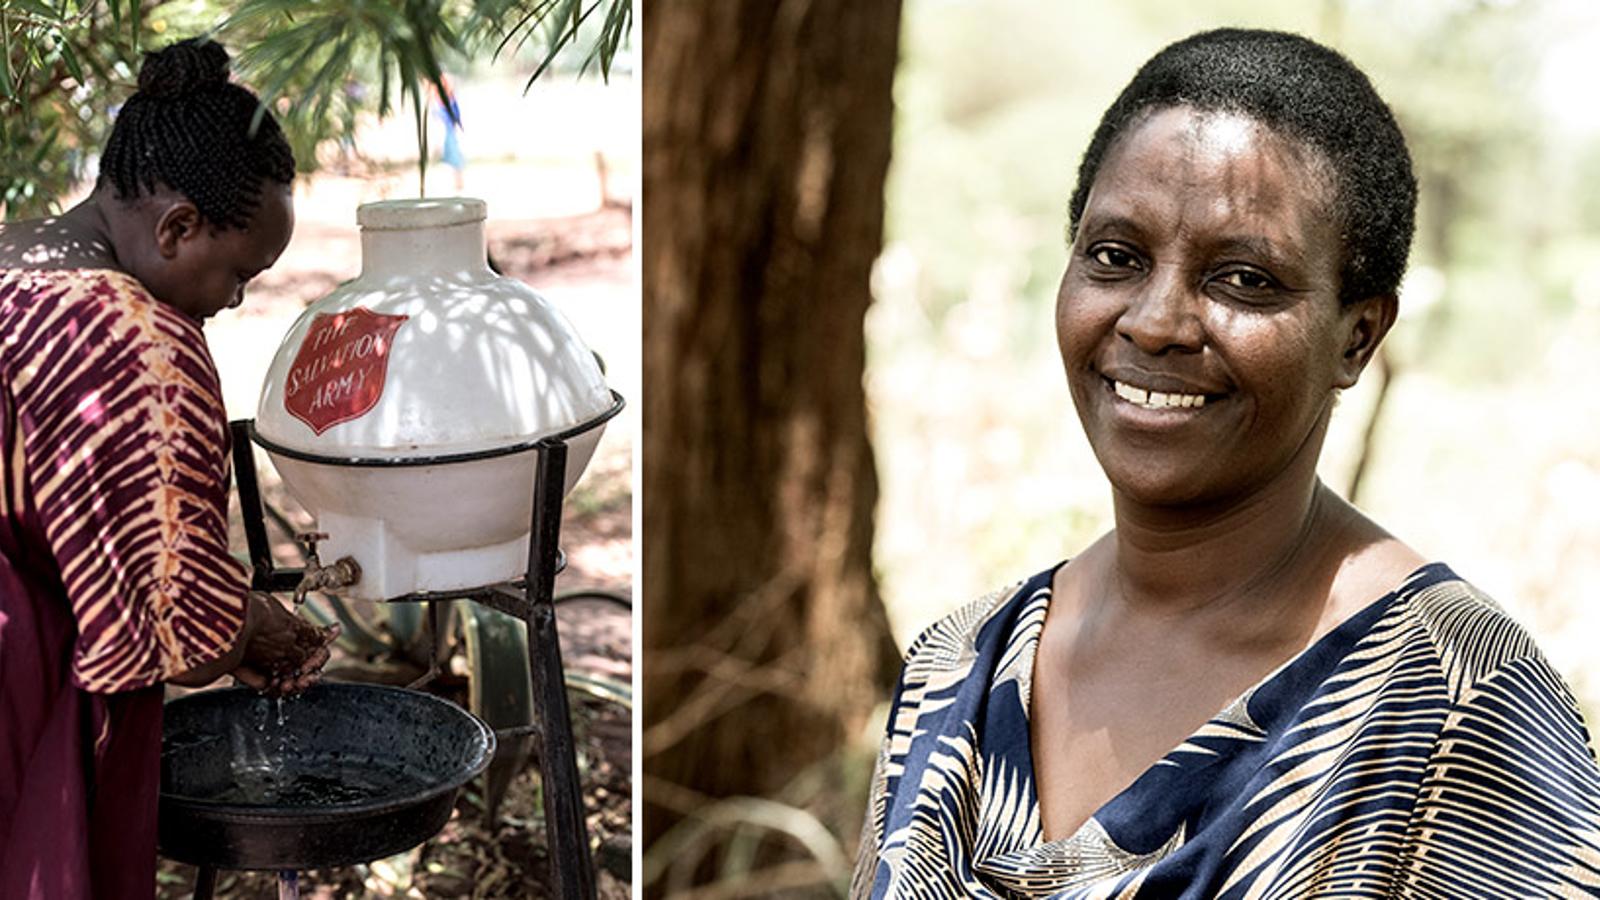 Till vänster: Ryggtavlan på en kvinna som tvättar händerna från en vattentank med Frälsningsarméns sköld på. Till höger: Porträttbild av Margreth Musumbi som är ansvarig för Frälsningsarméns vattenprojekt i en av Kenyas södra regioner.